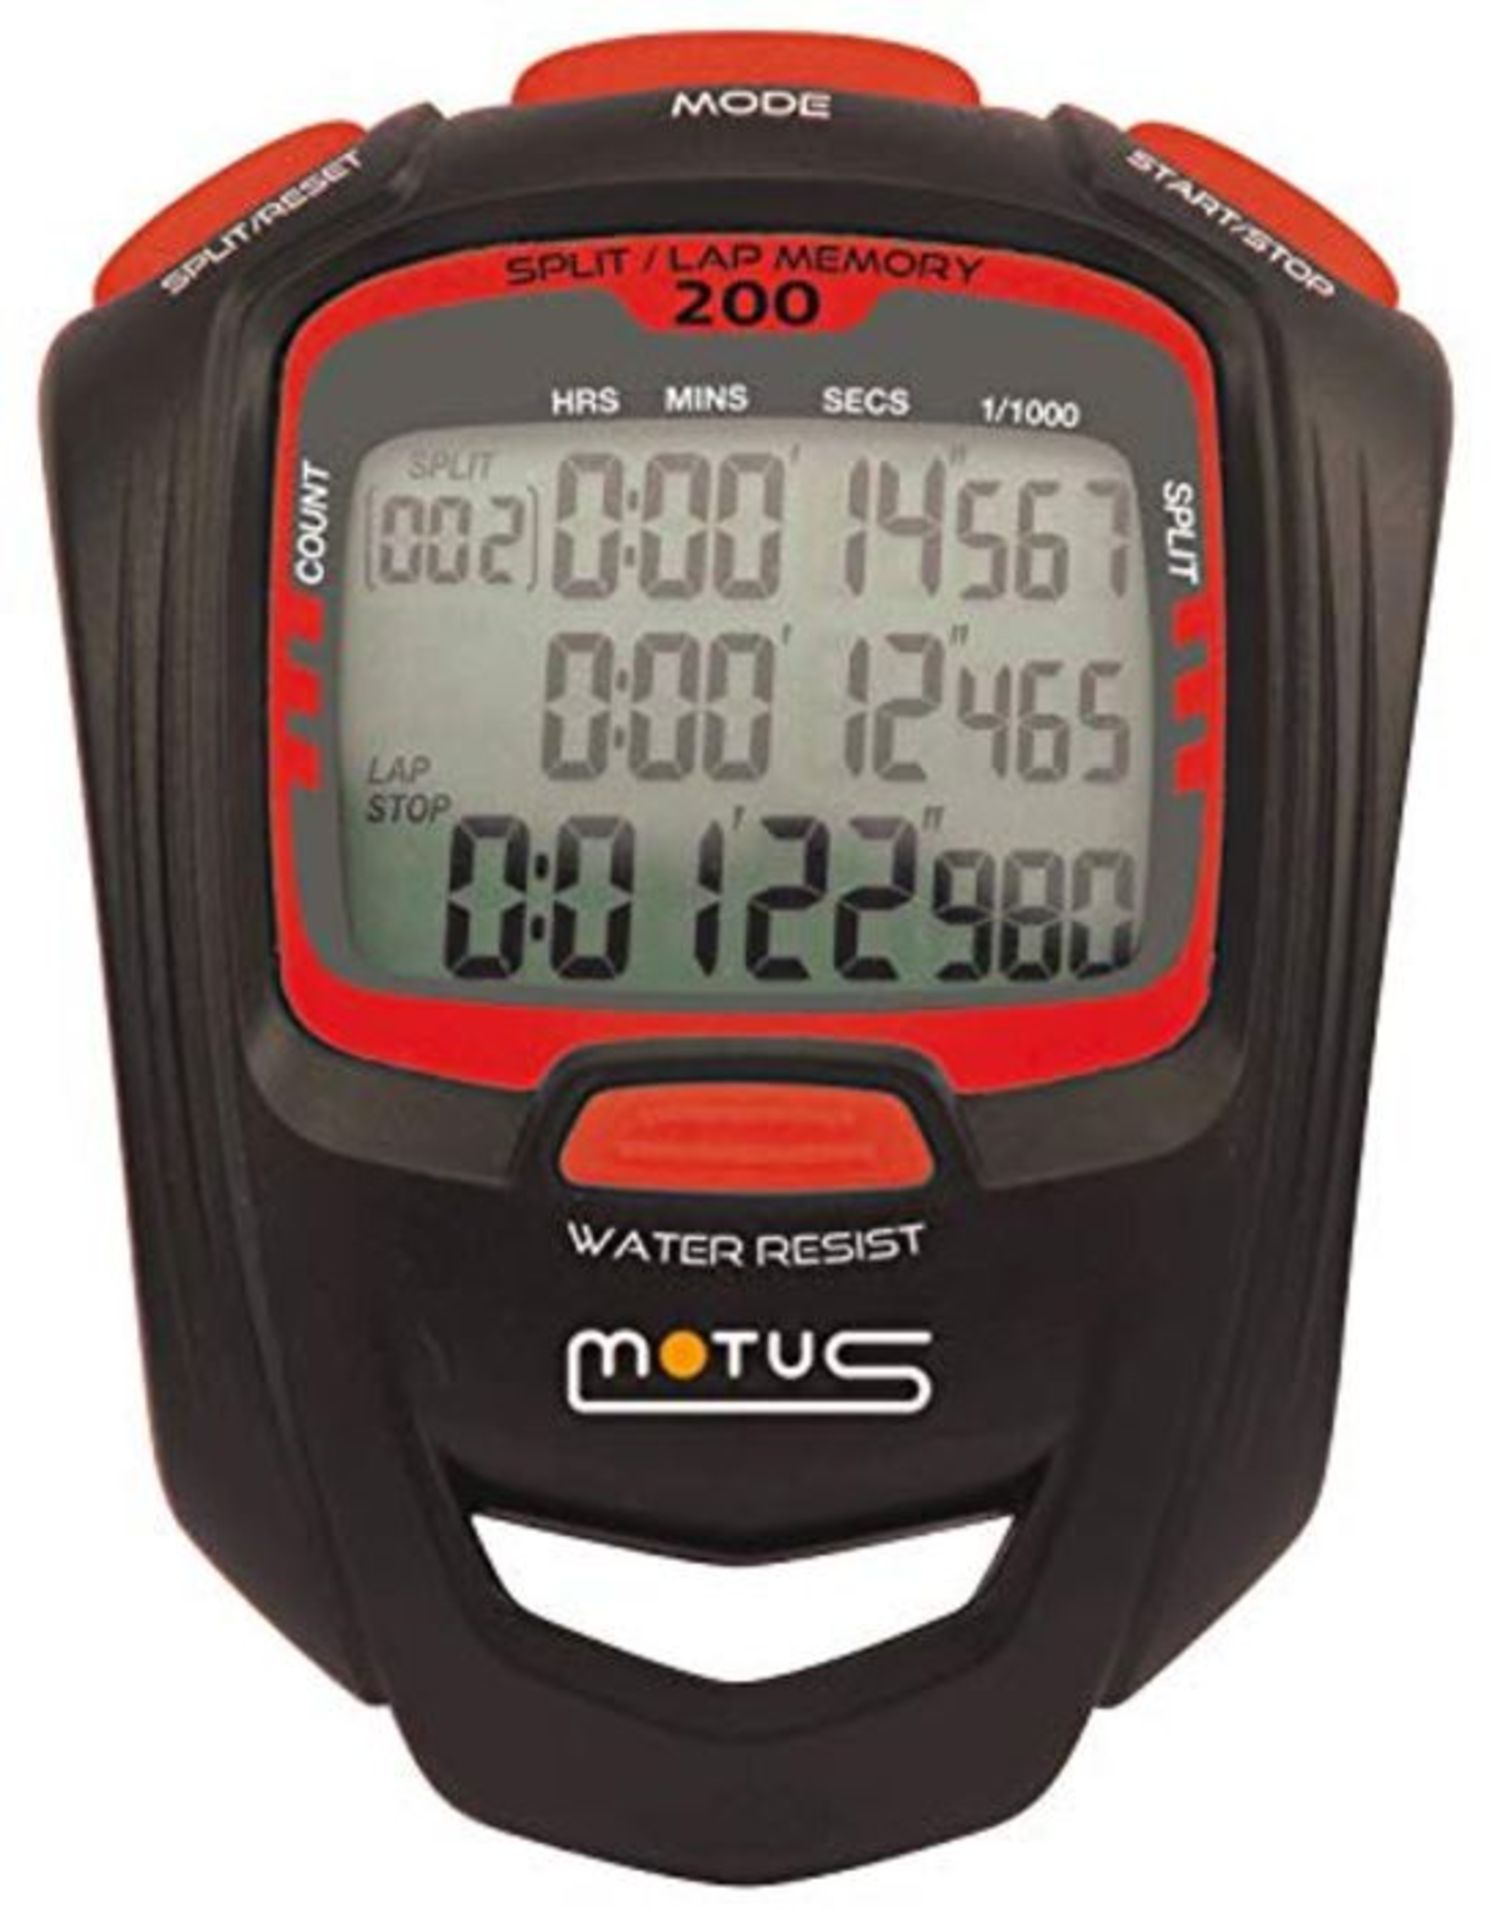 Cronometro sportivo con 200 intervalli, intervallo training e definizione a 1/1000 di